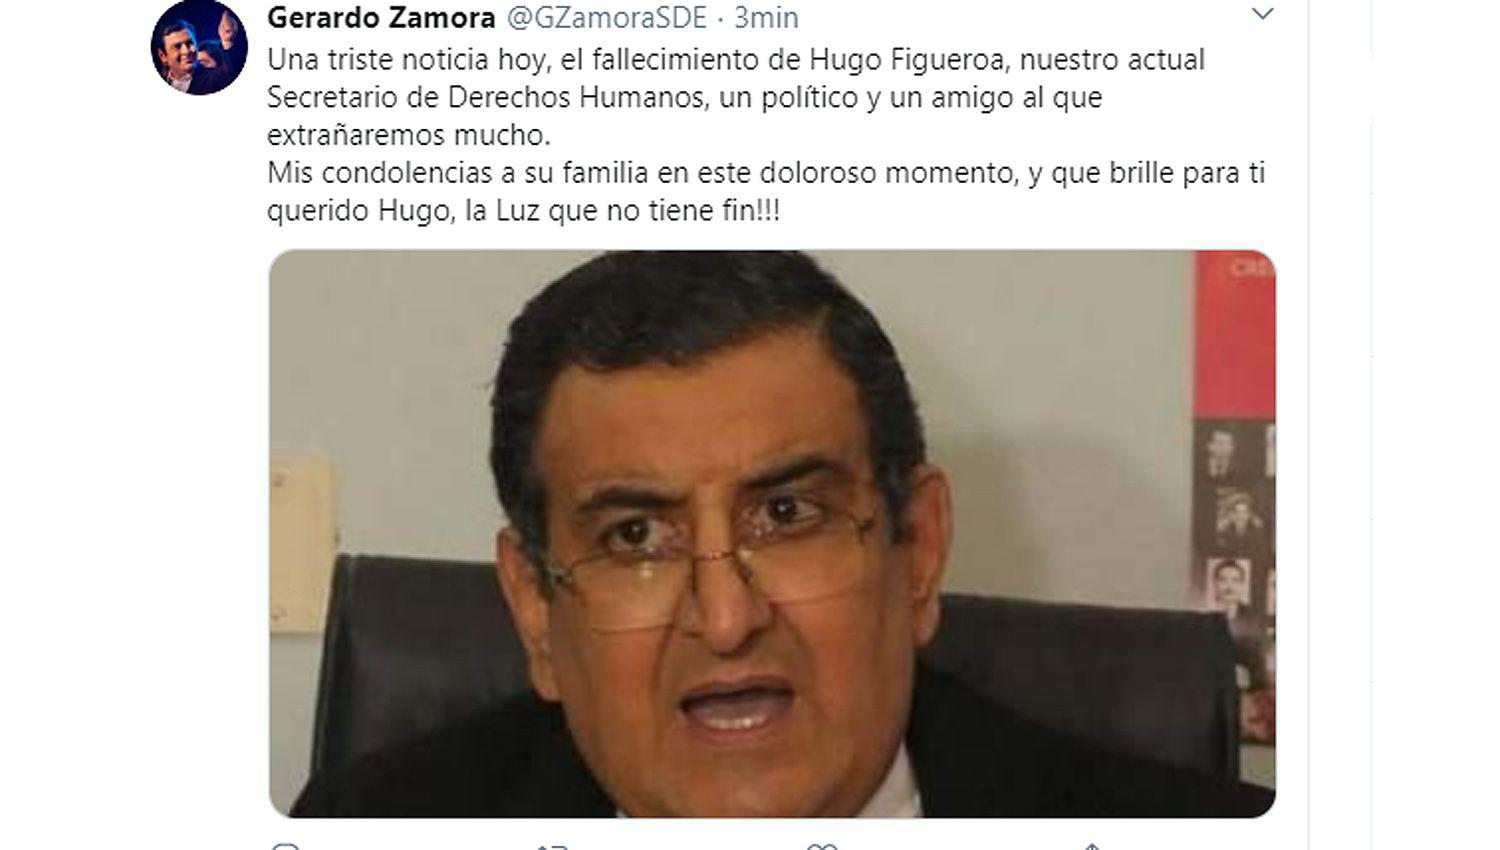 El gobernador Zamora lamentoacute el fallecimiento de Hugo Figueroa